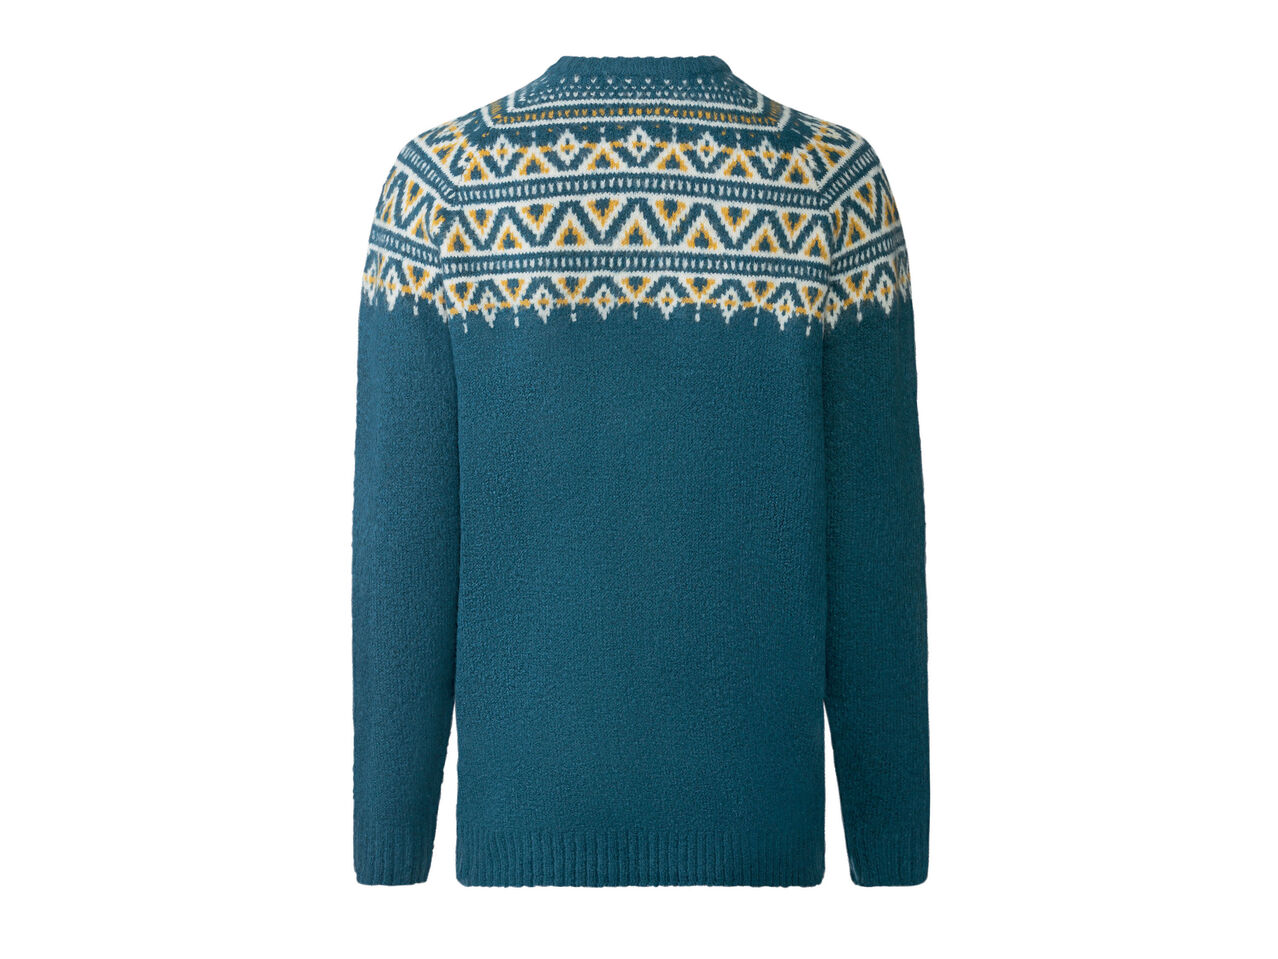 ESMARA® Sweter damski z dzianiny , cena 49,99 PLN 

- rozmiary: S-XL*
- wysoka ...